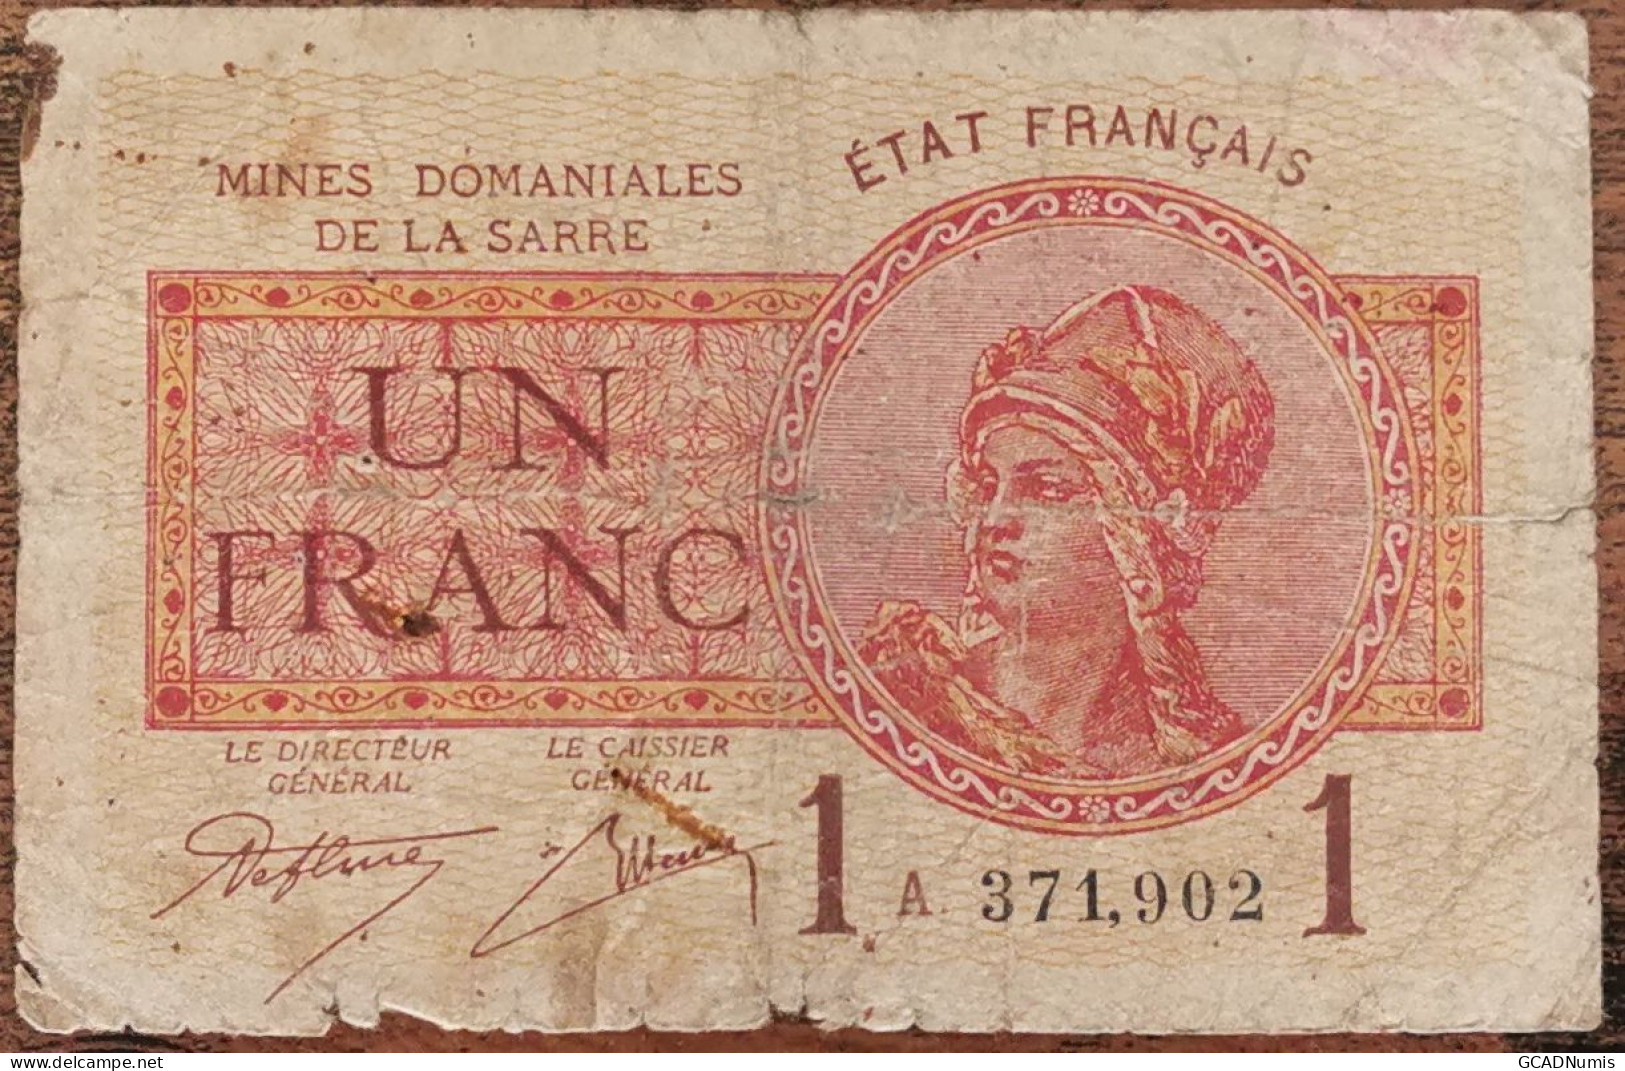 Billet De 1 Franc MINES DOMANIALES DE LA SARRE état Français A 371902  Cf Photos - 1947 Saarland